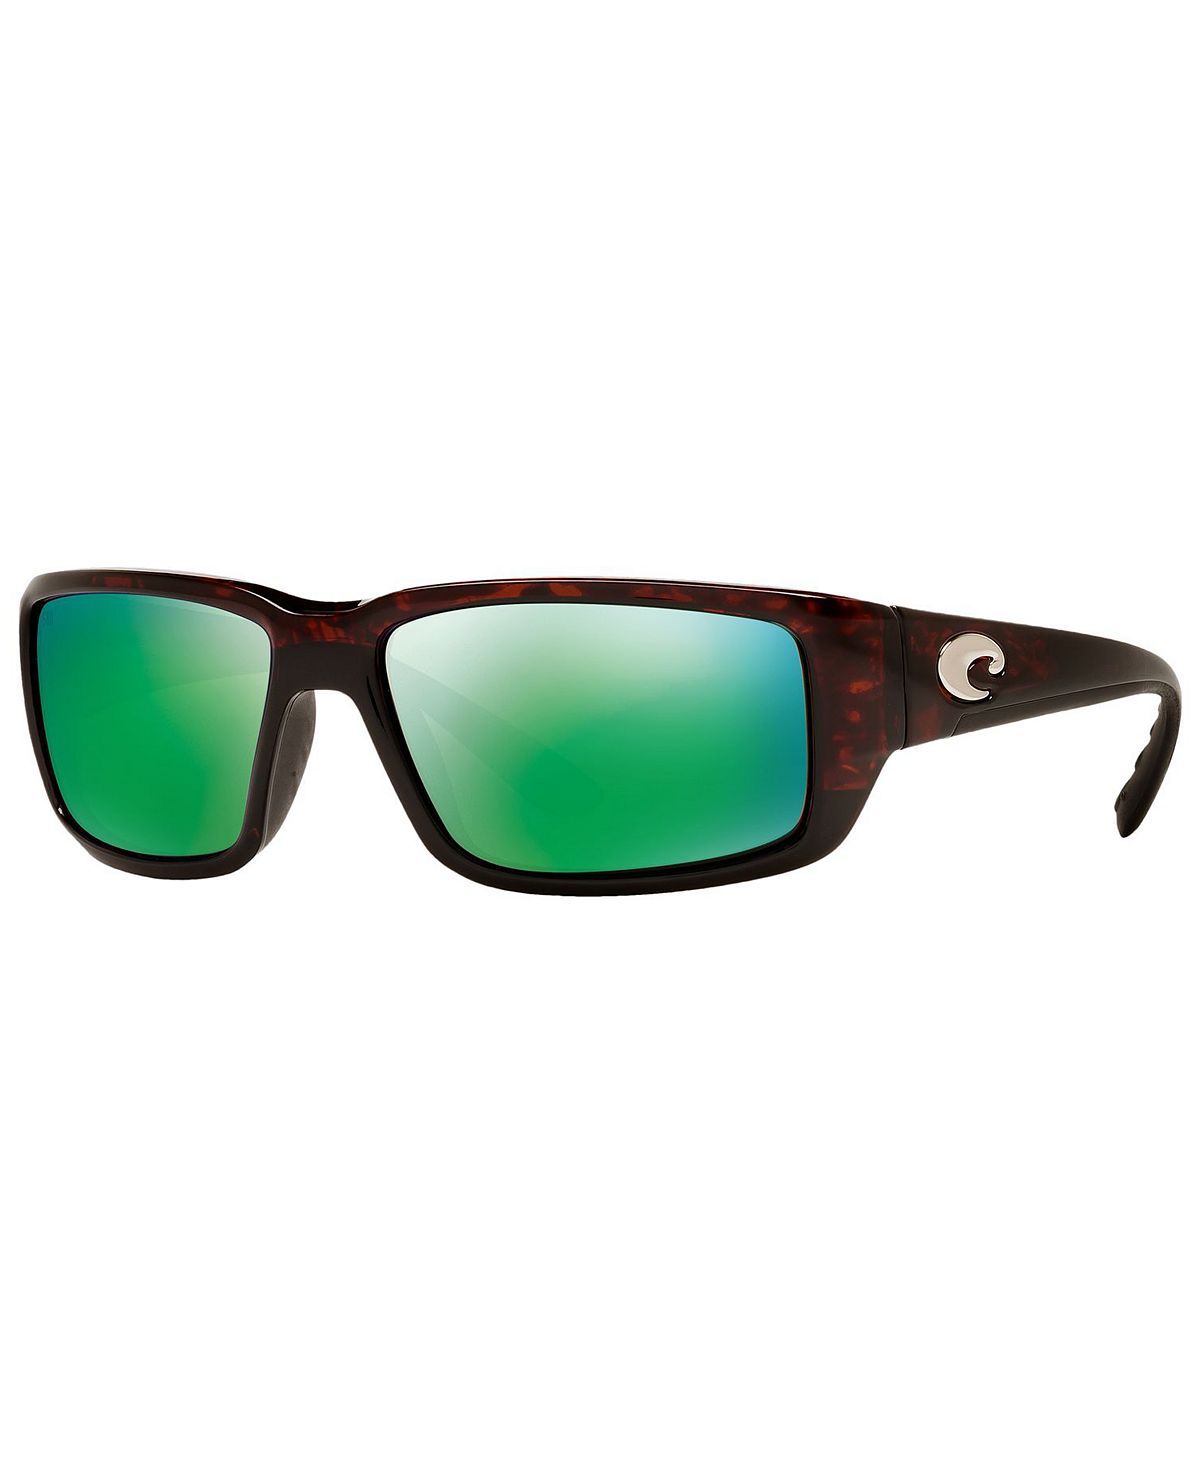 costa del mar permit 580 p tortoise green mirror Мужские поляризованные солнцезащитные очки, FANTAIL Costa Del Mar